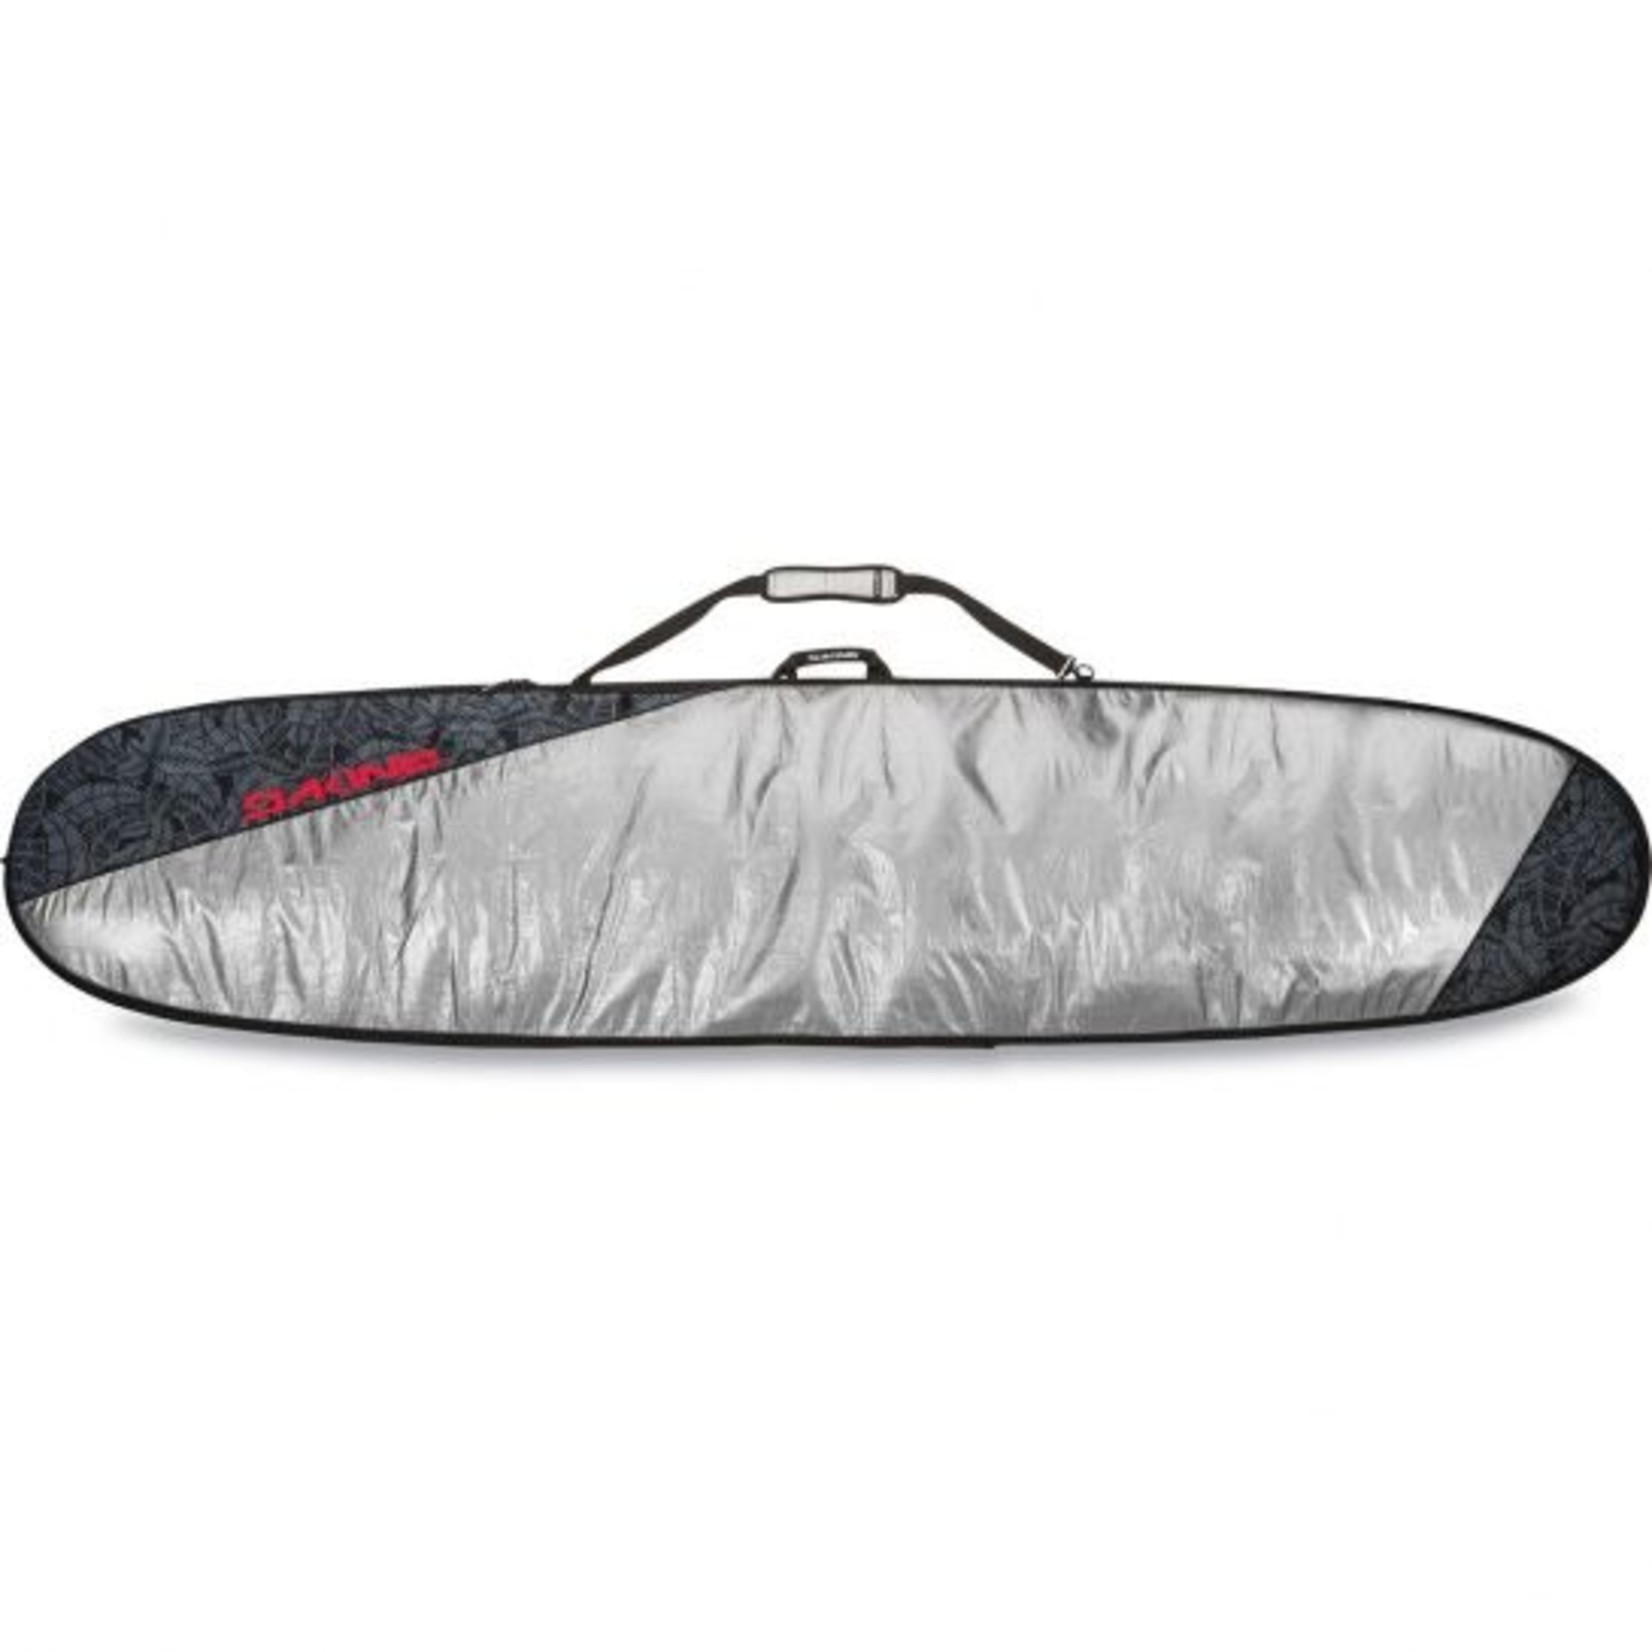 Dakine Daylight noserider surfboard bag